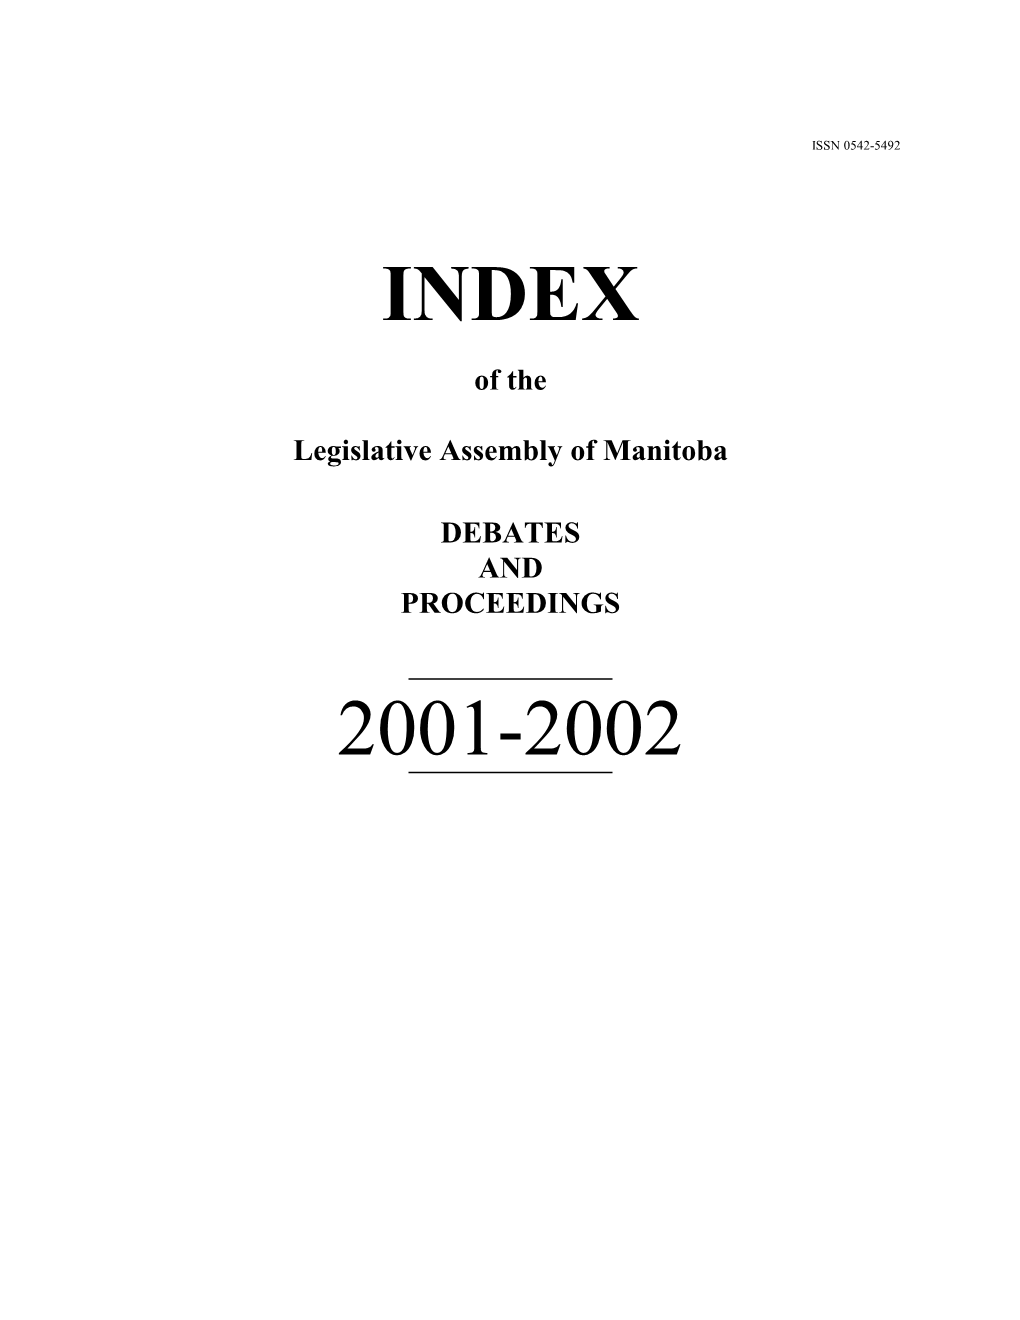 Index 2001-2002